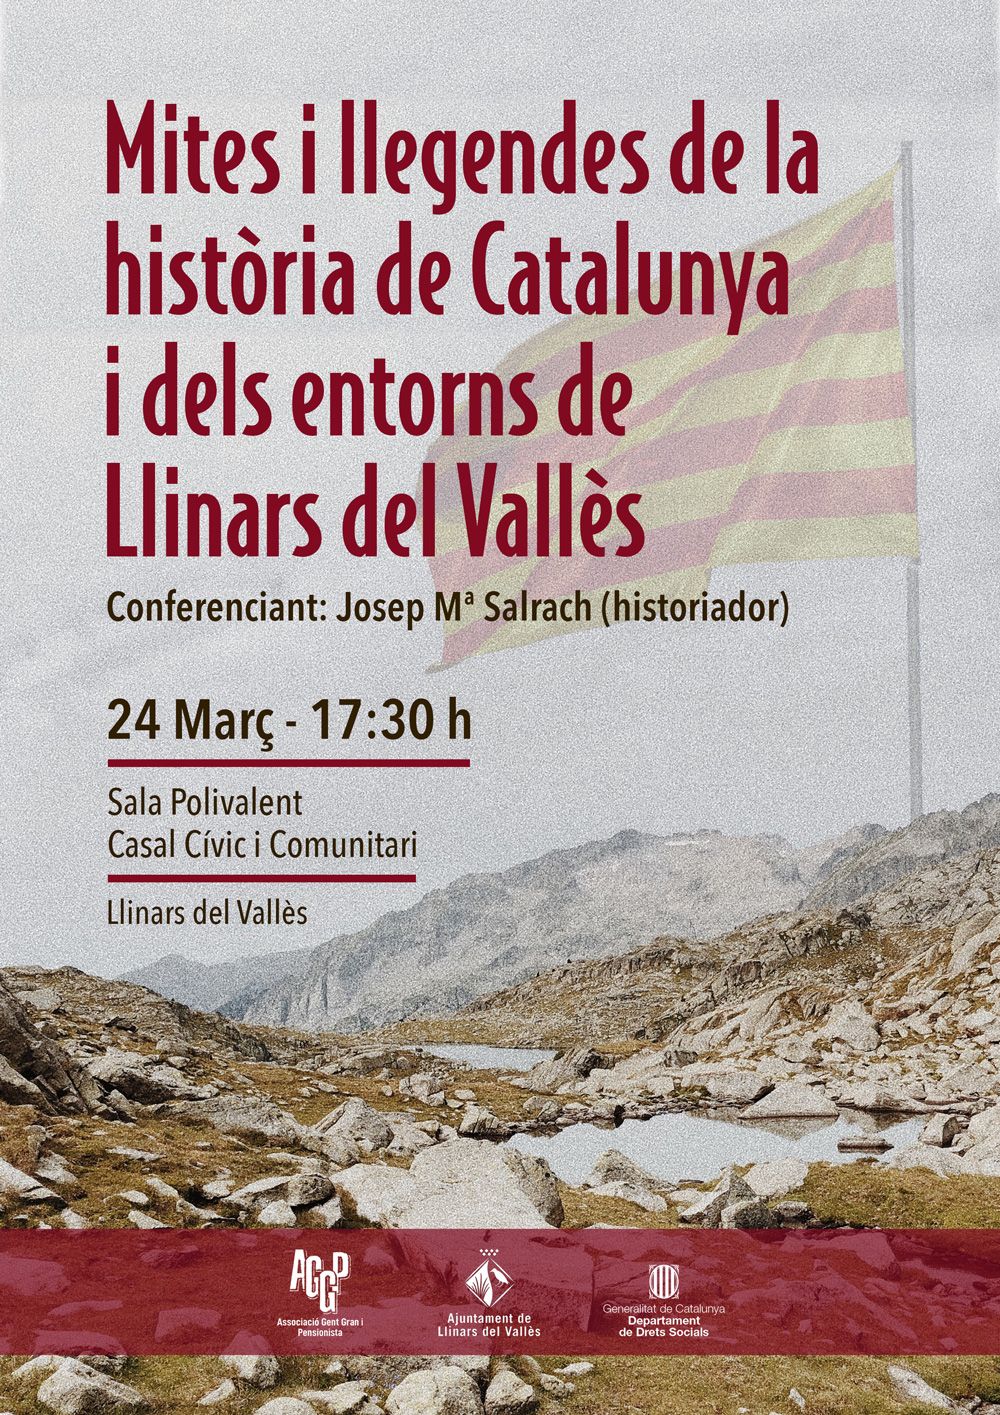 Mites i llegendes de la història de Catalunya i dels entorns de Llinars del Vallès